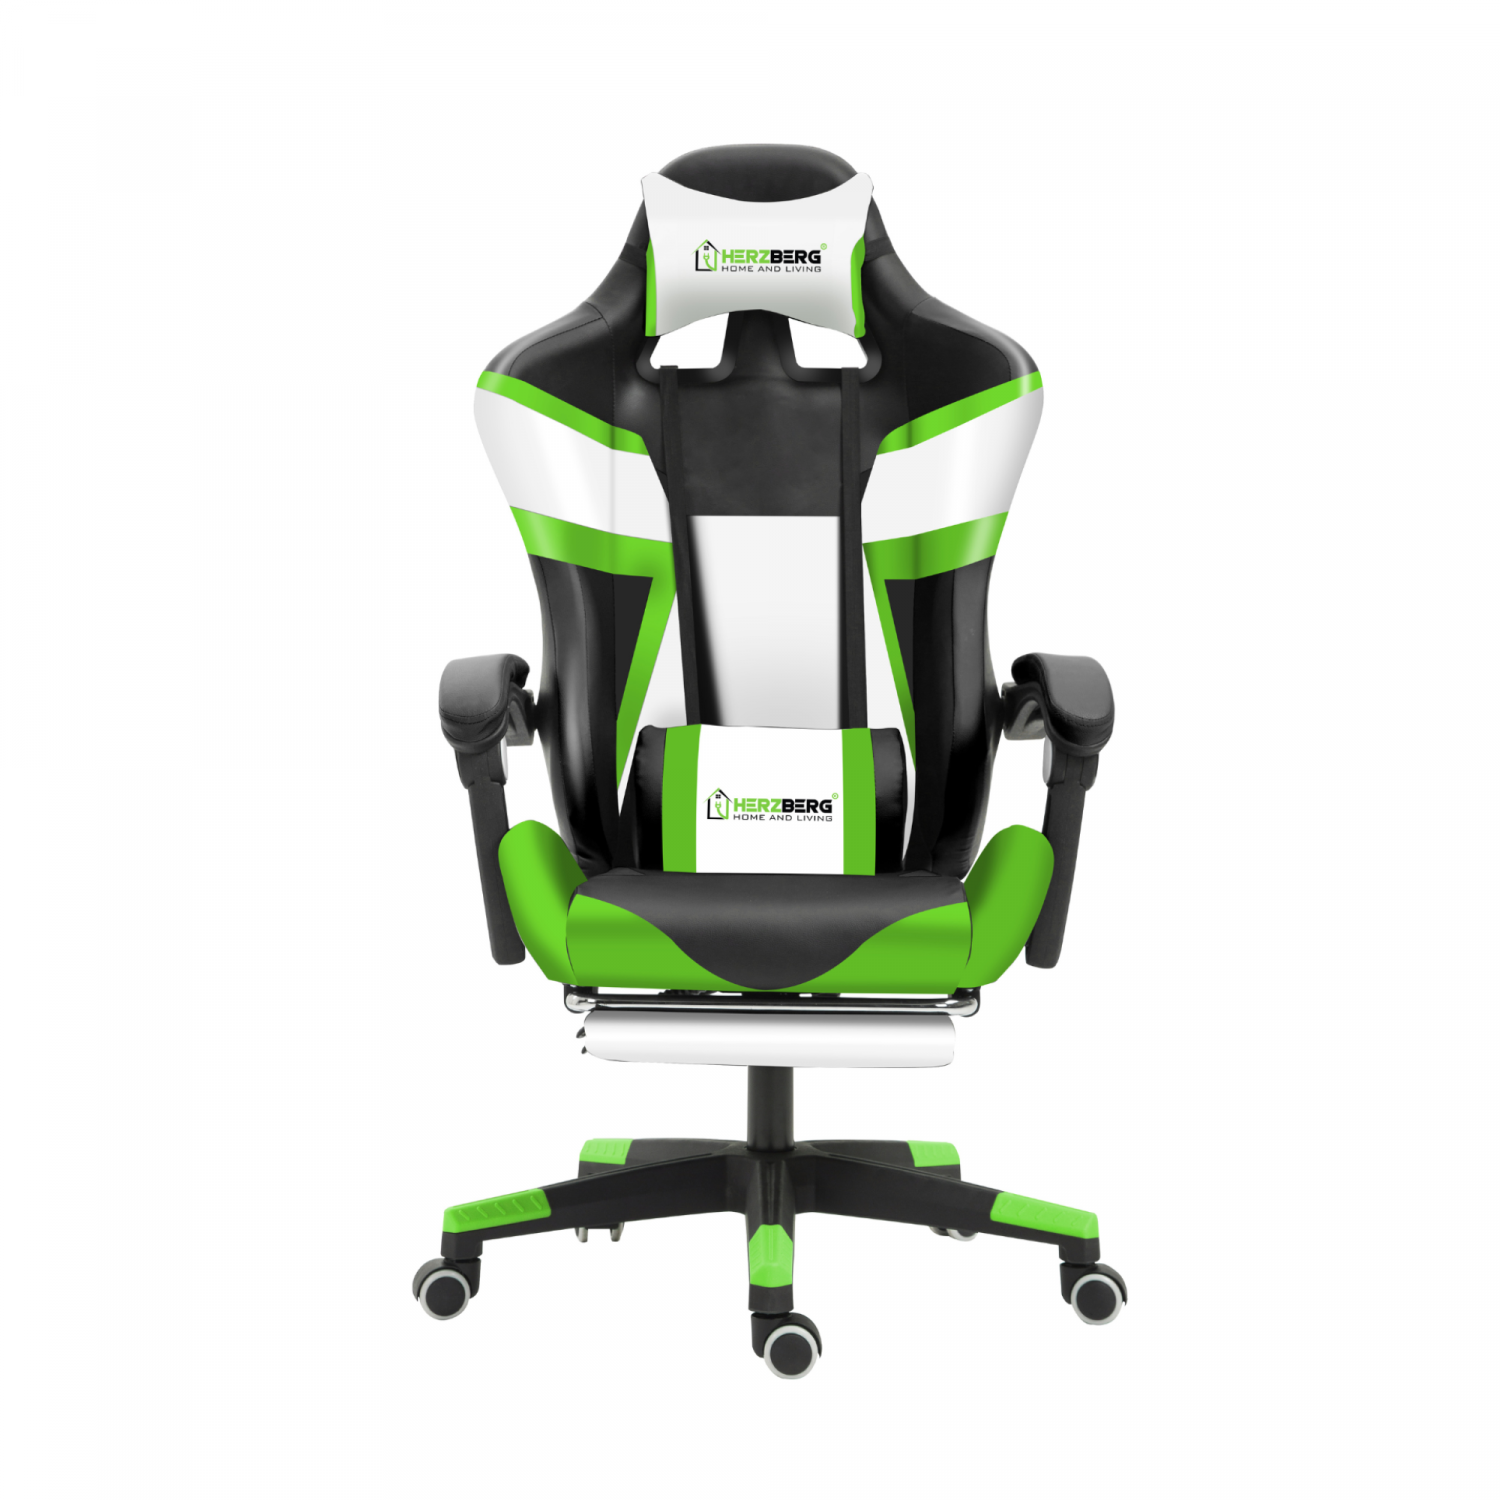 Billede af Trefarvet spille- og kontorstol med T-formet accentgrøn